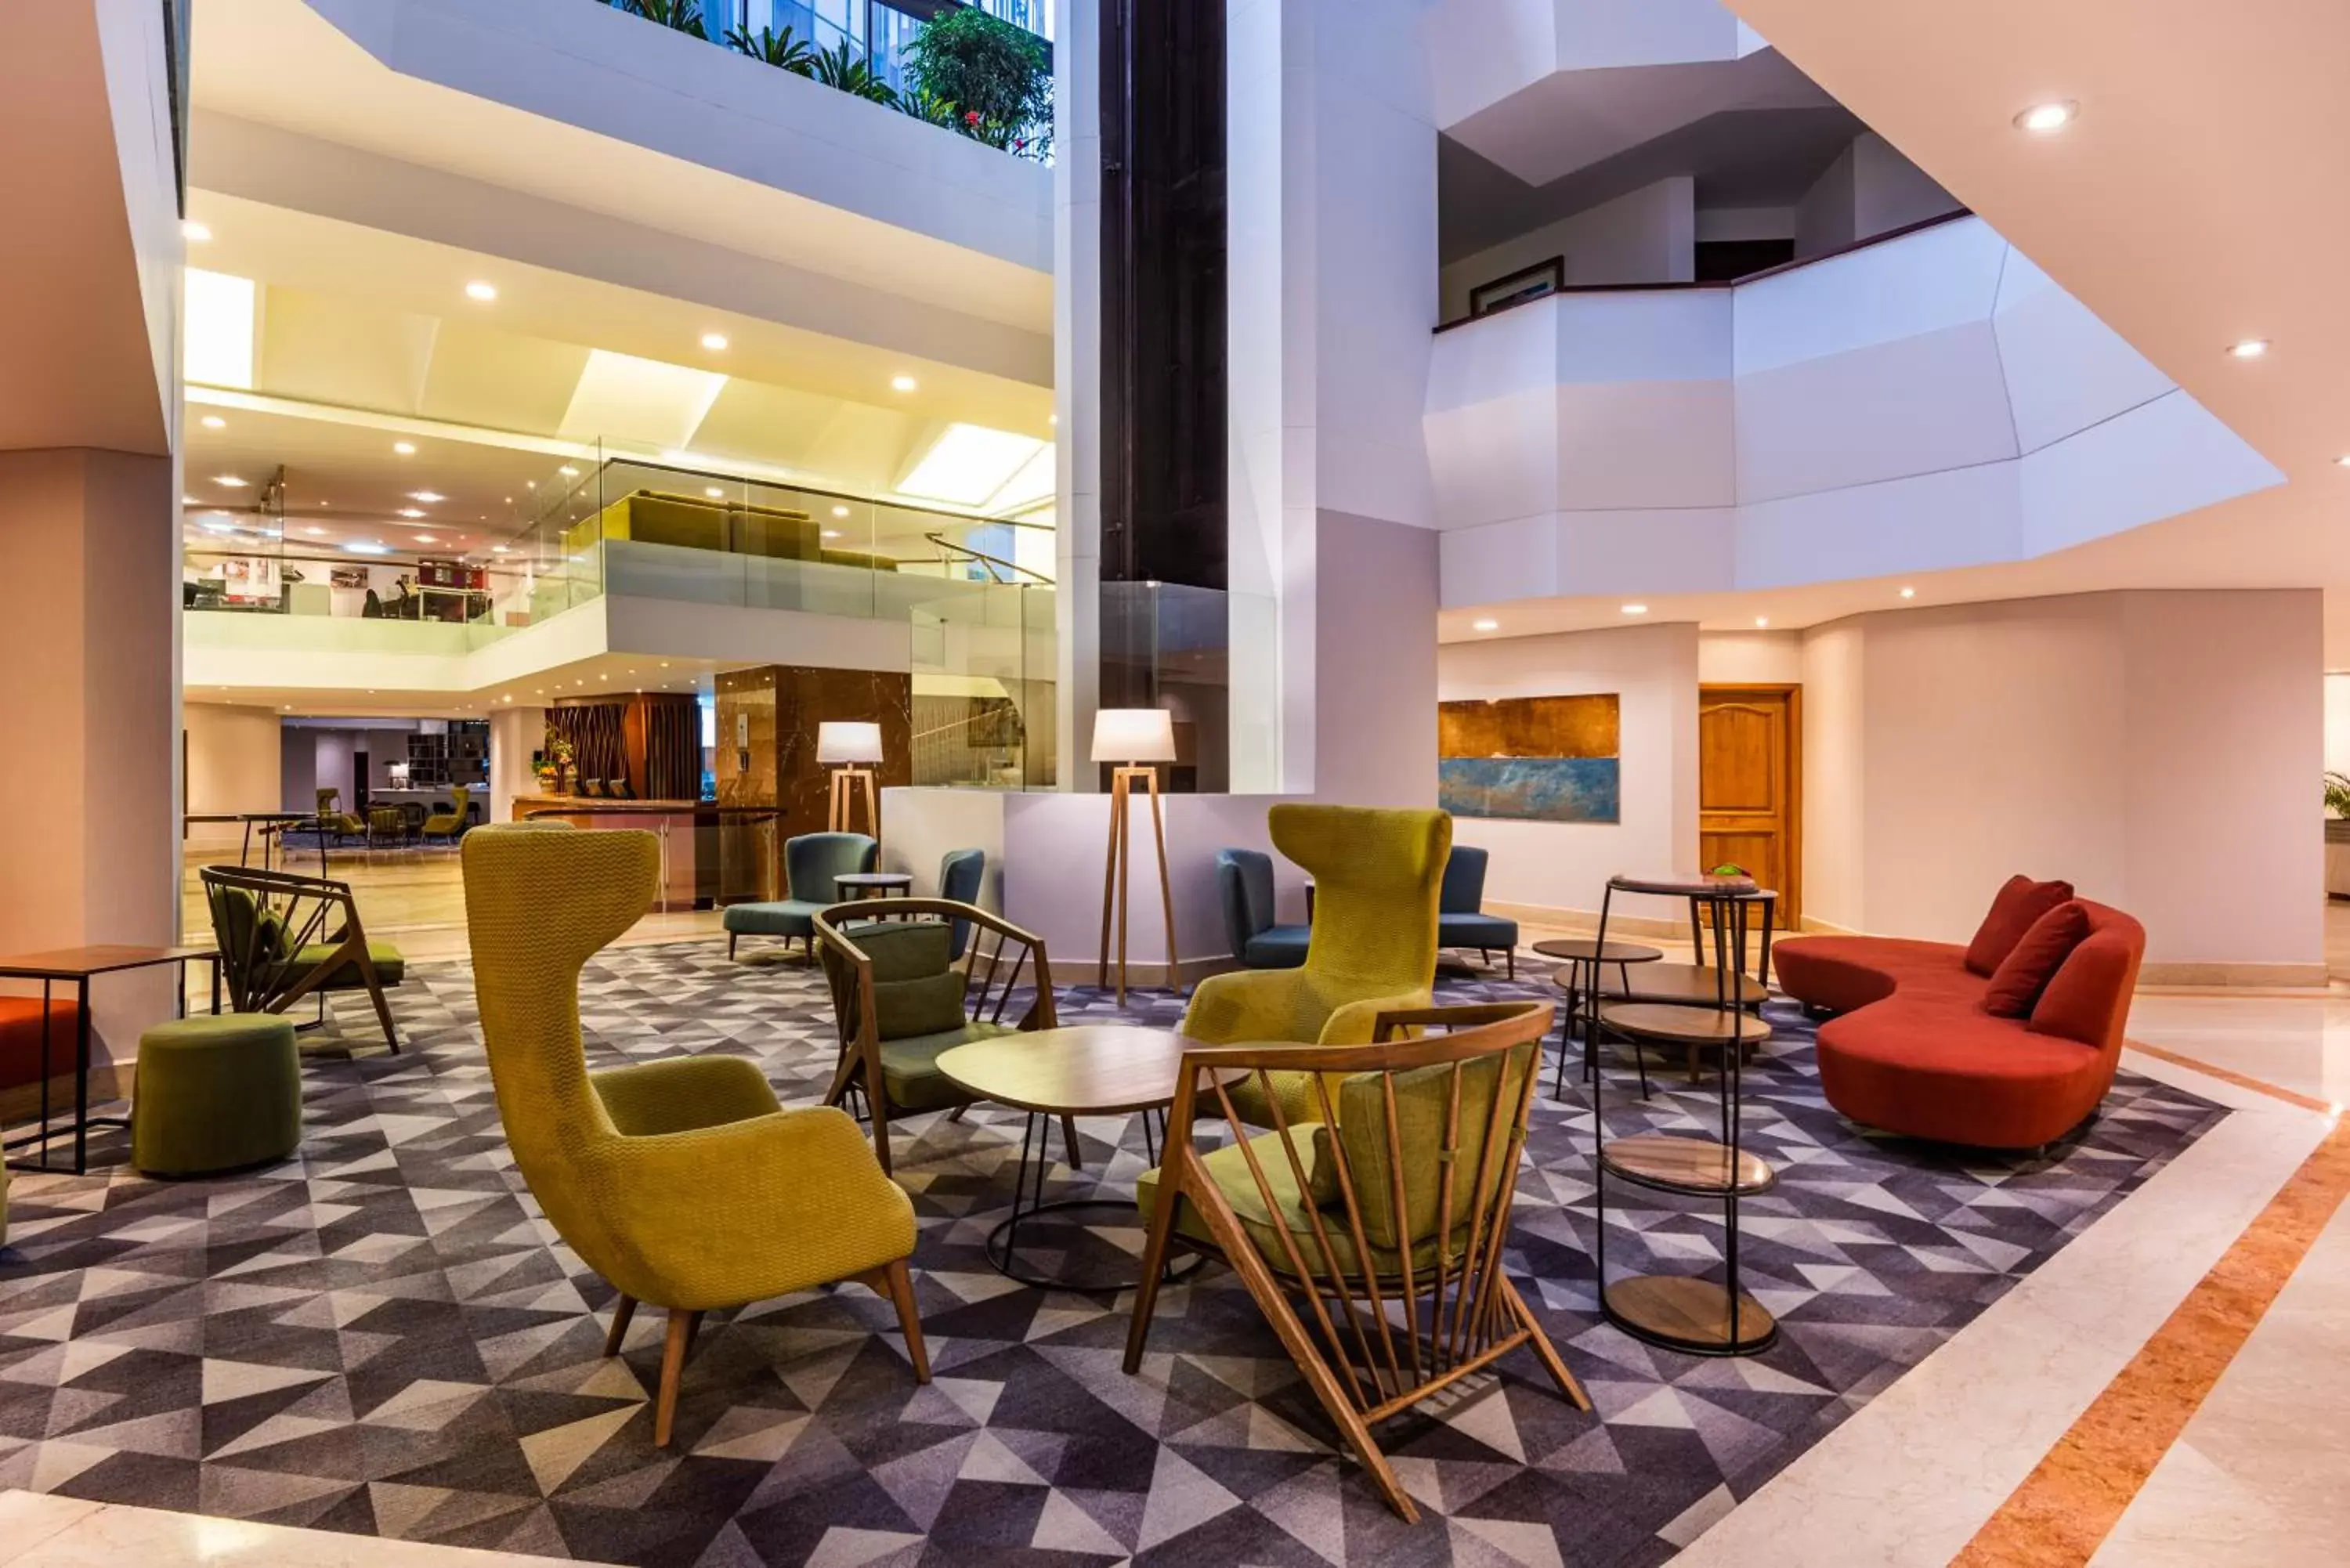 Lobby or reception, Lounge/Bar in Cosmos 100 Hotel & Centro de Convenciones - Hoteles Cosmos